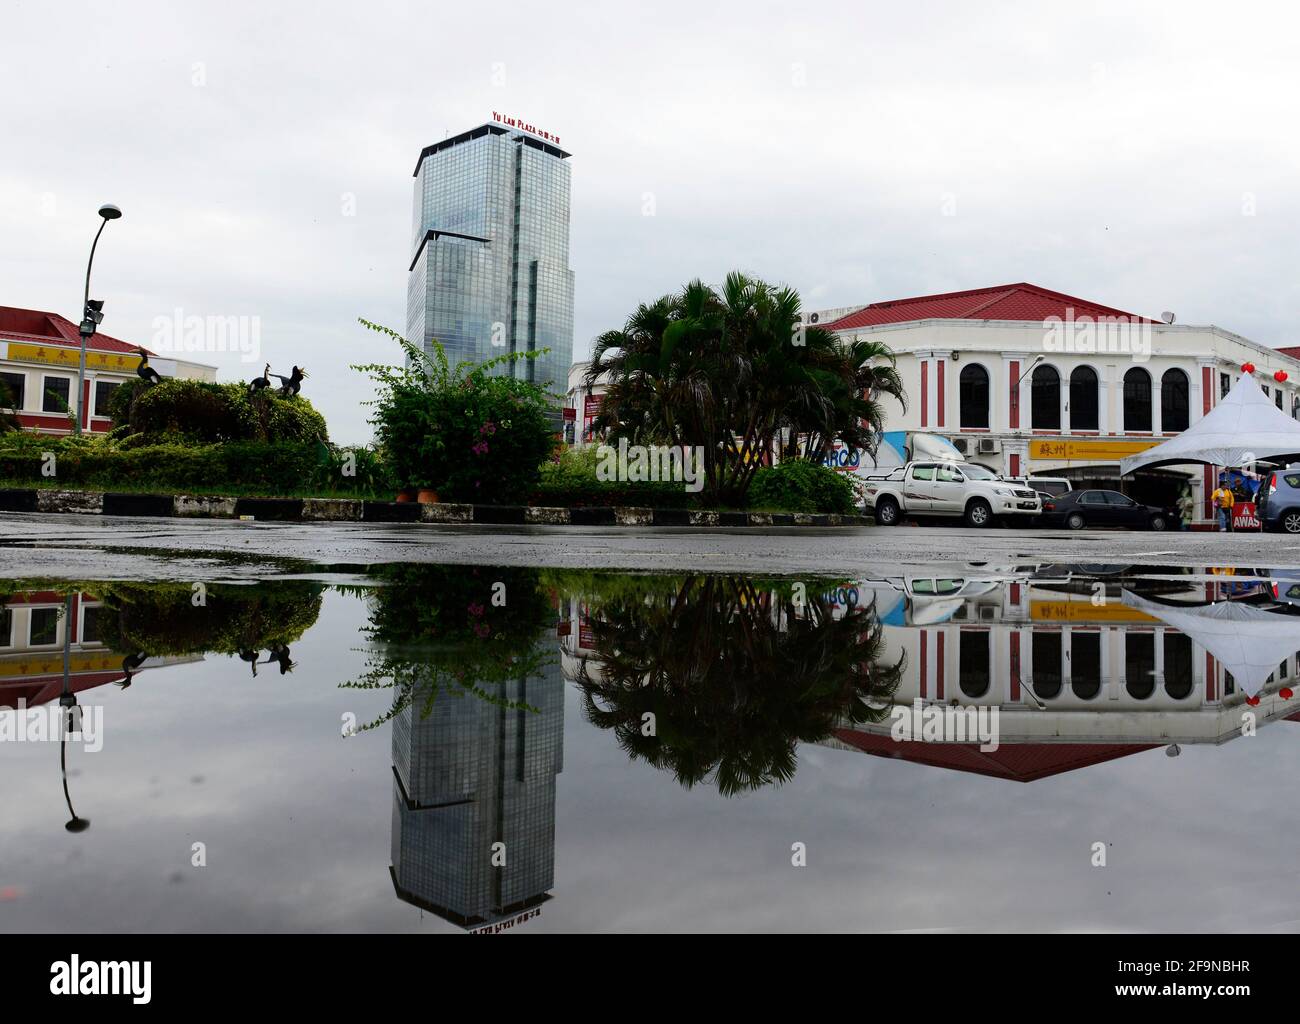 Yu Lan Plaza in Miri, Malaysia. Stock Photo